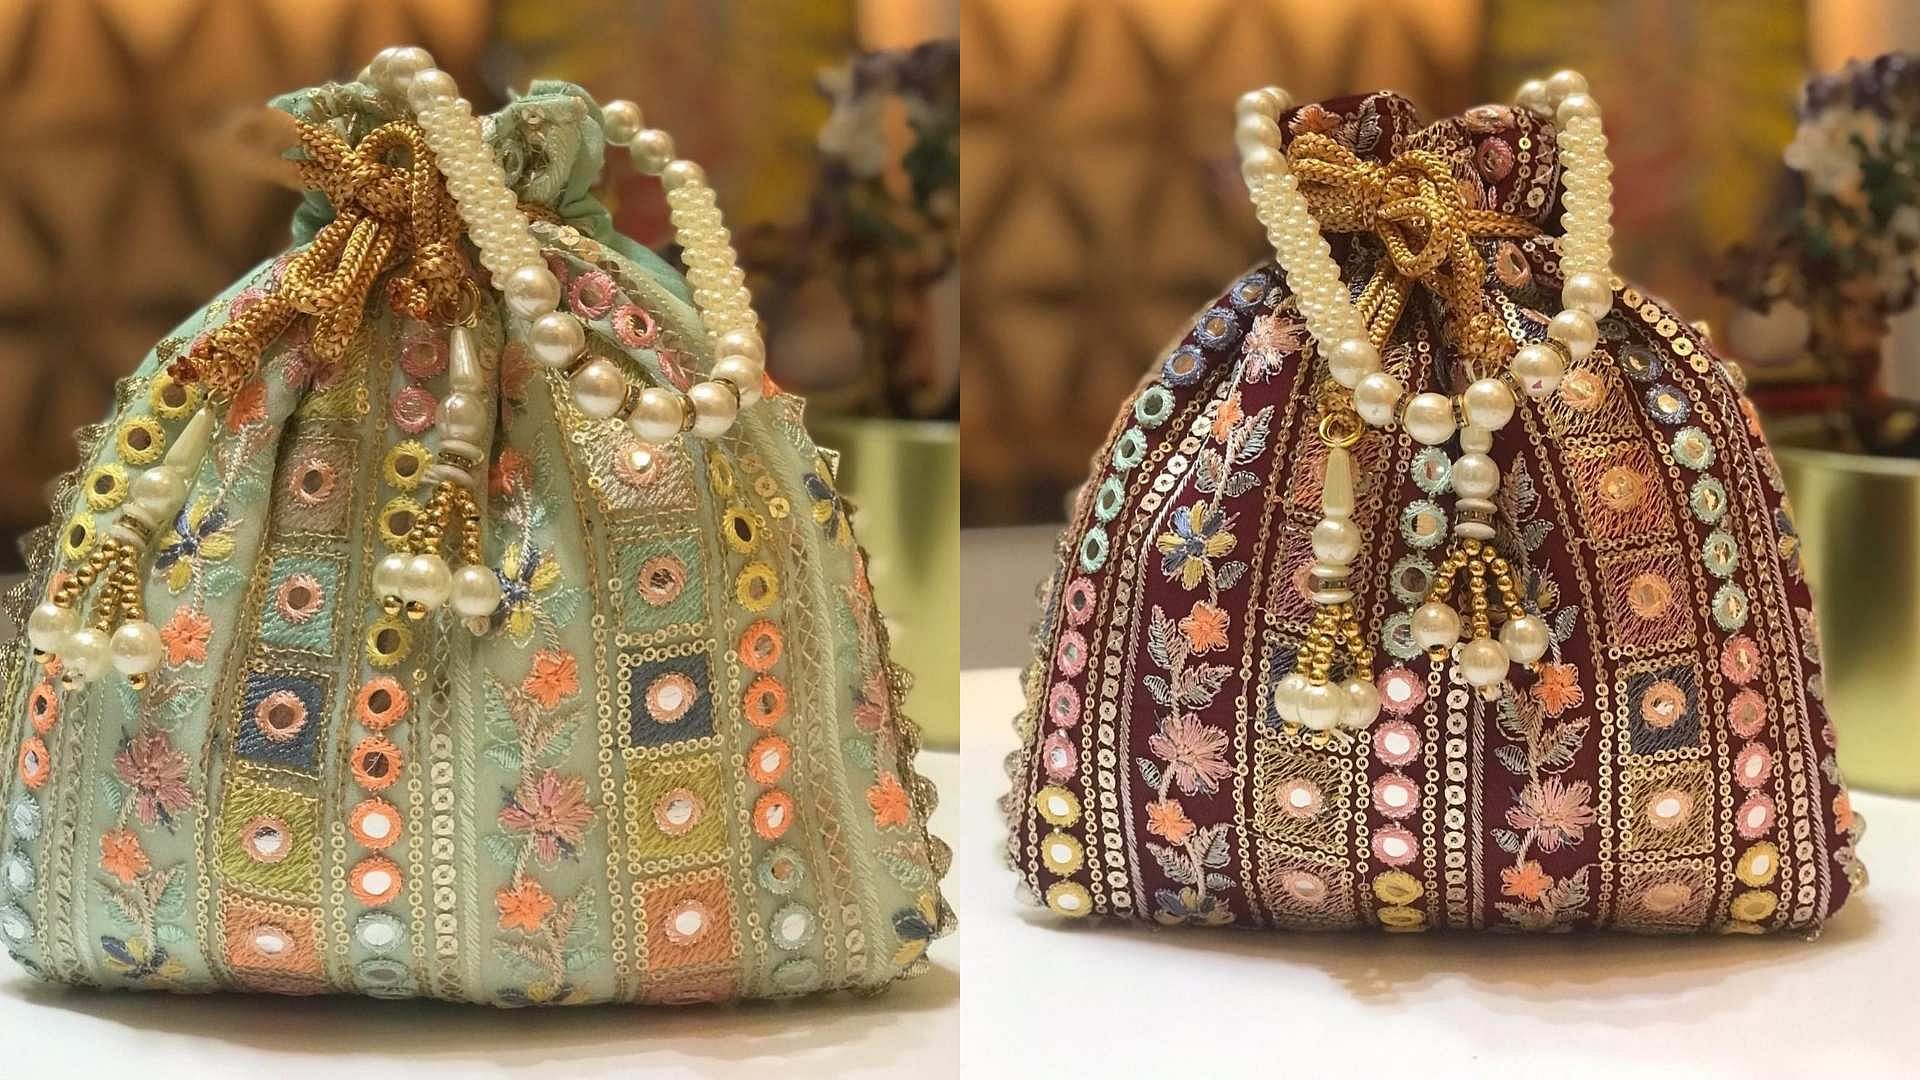 Best Handbags For Women: शादी ब्याह में चार चांद लगा देंगे ये बैग, सहेलियां  भी कहेंगी वाह भई वाह | best handbags for women to ace elegant look in  weddings and parties |